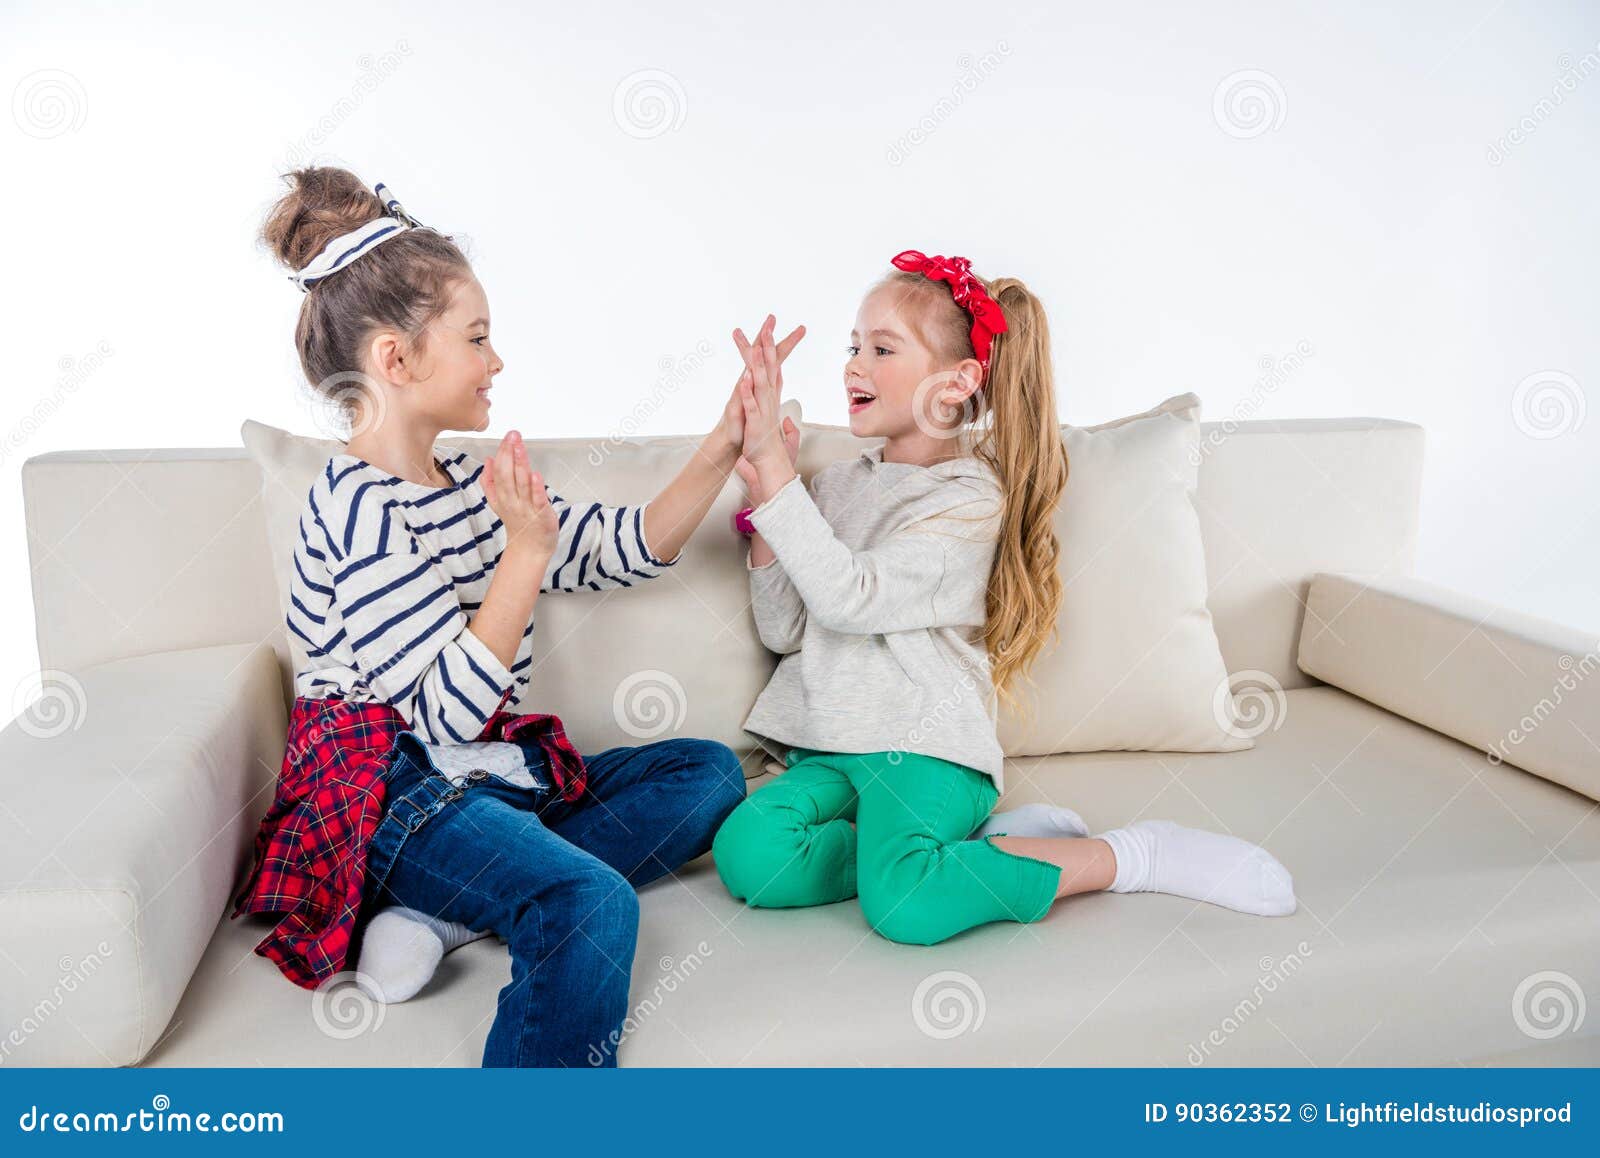 Мы сидим на веселе делать. Девочка играет на диване. Девочка сидит играет в игрушки фото. Маленькая девочка играет на диван. Девочка сидит рядом с мамой на диване.